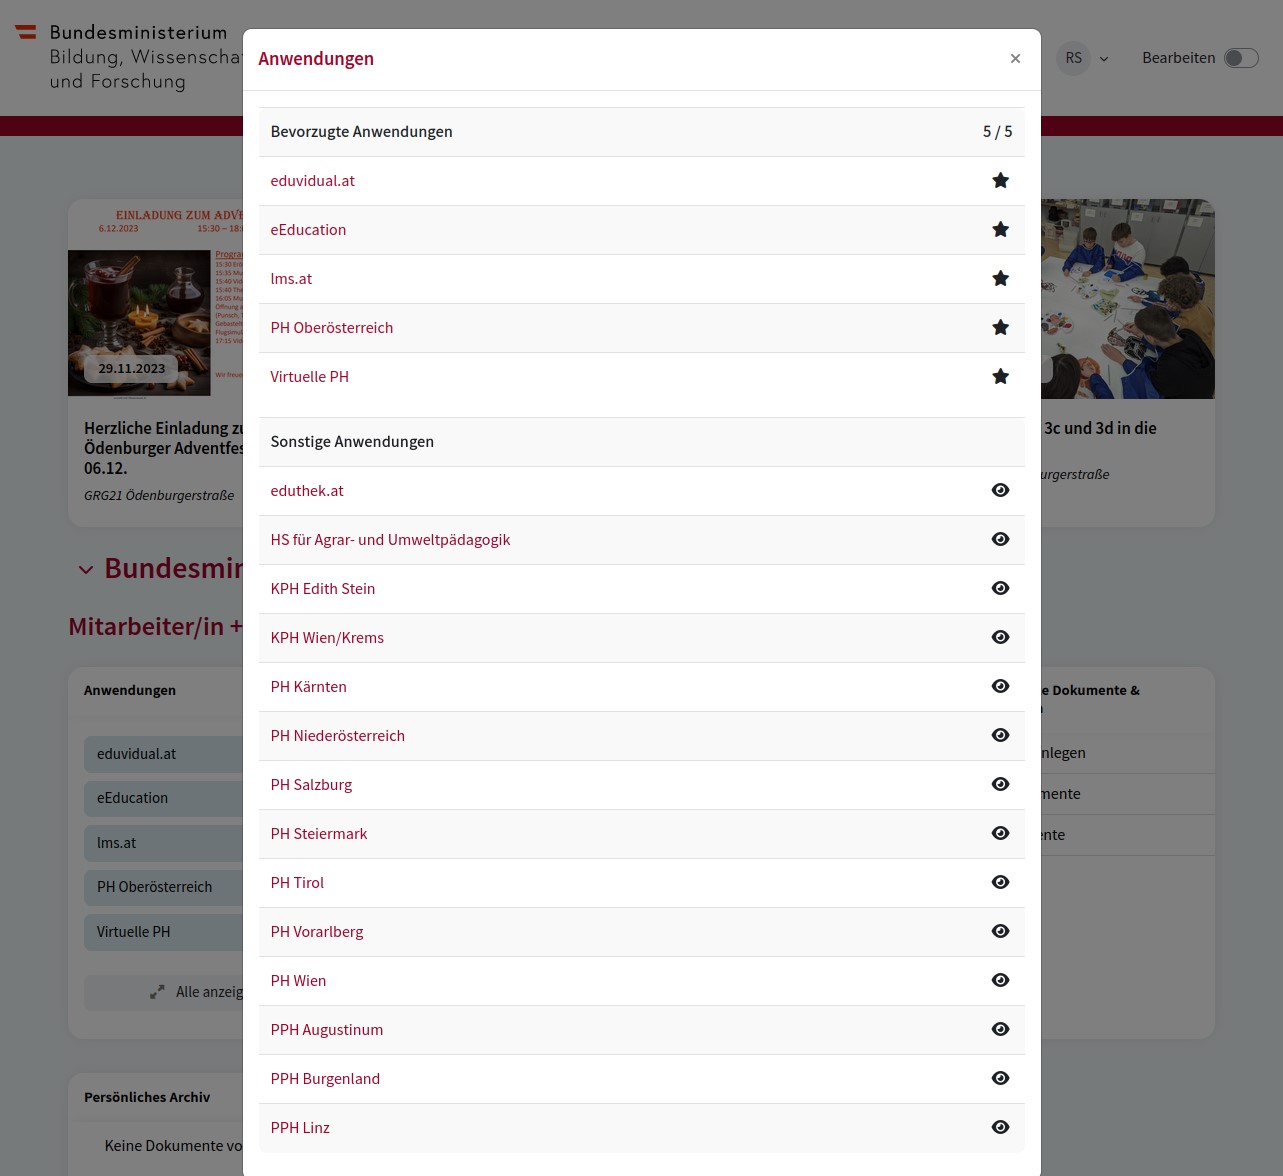 Abbildung 4: Beispiel für die Anwendungsauswahl im Bildungsportal durch Nutzer/innen (Screenshot)